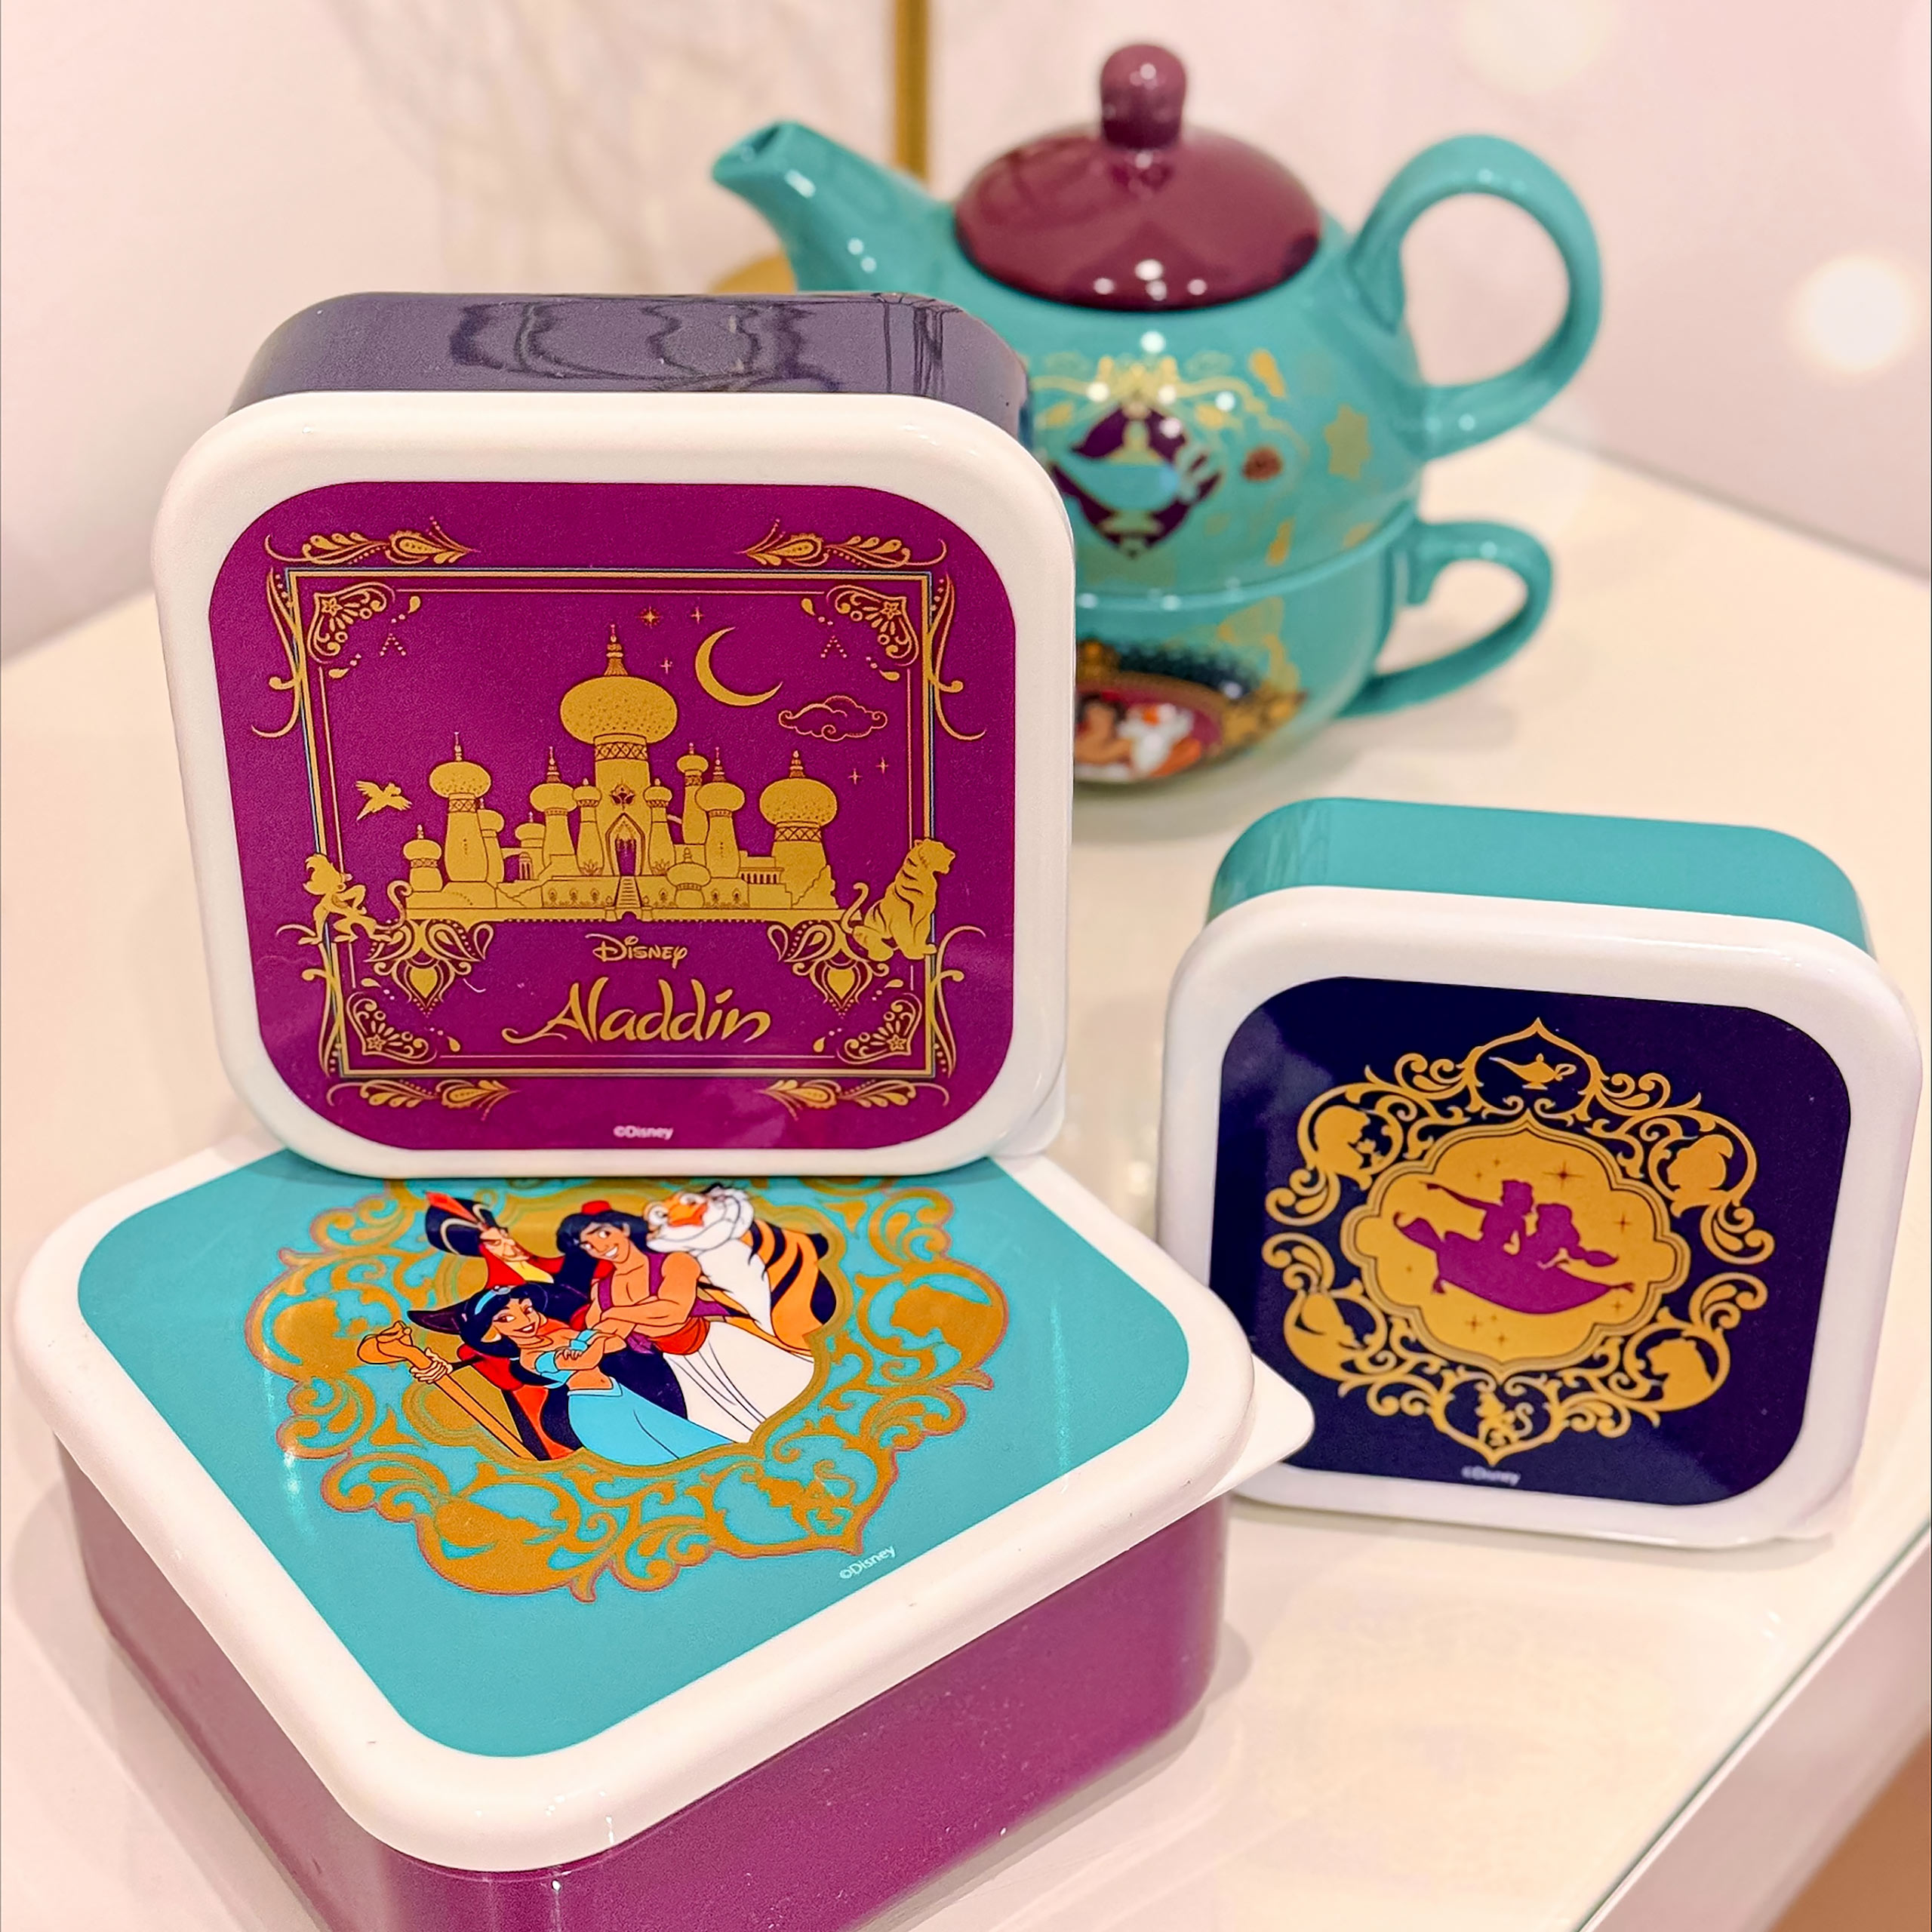 Aladdin - Jasmine and Aladdin Lunchbox Set of 3